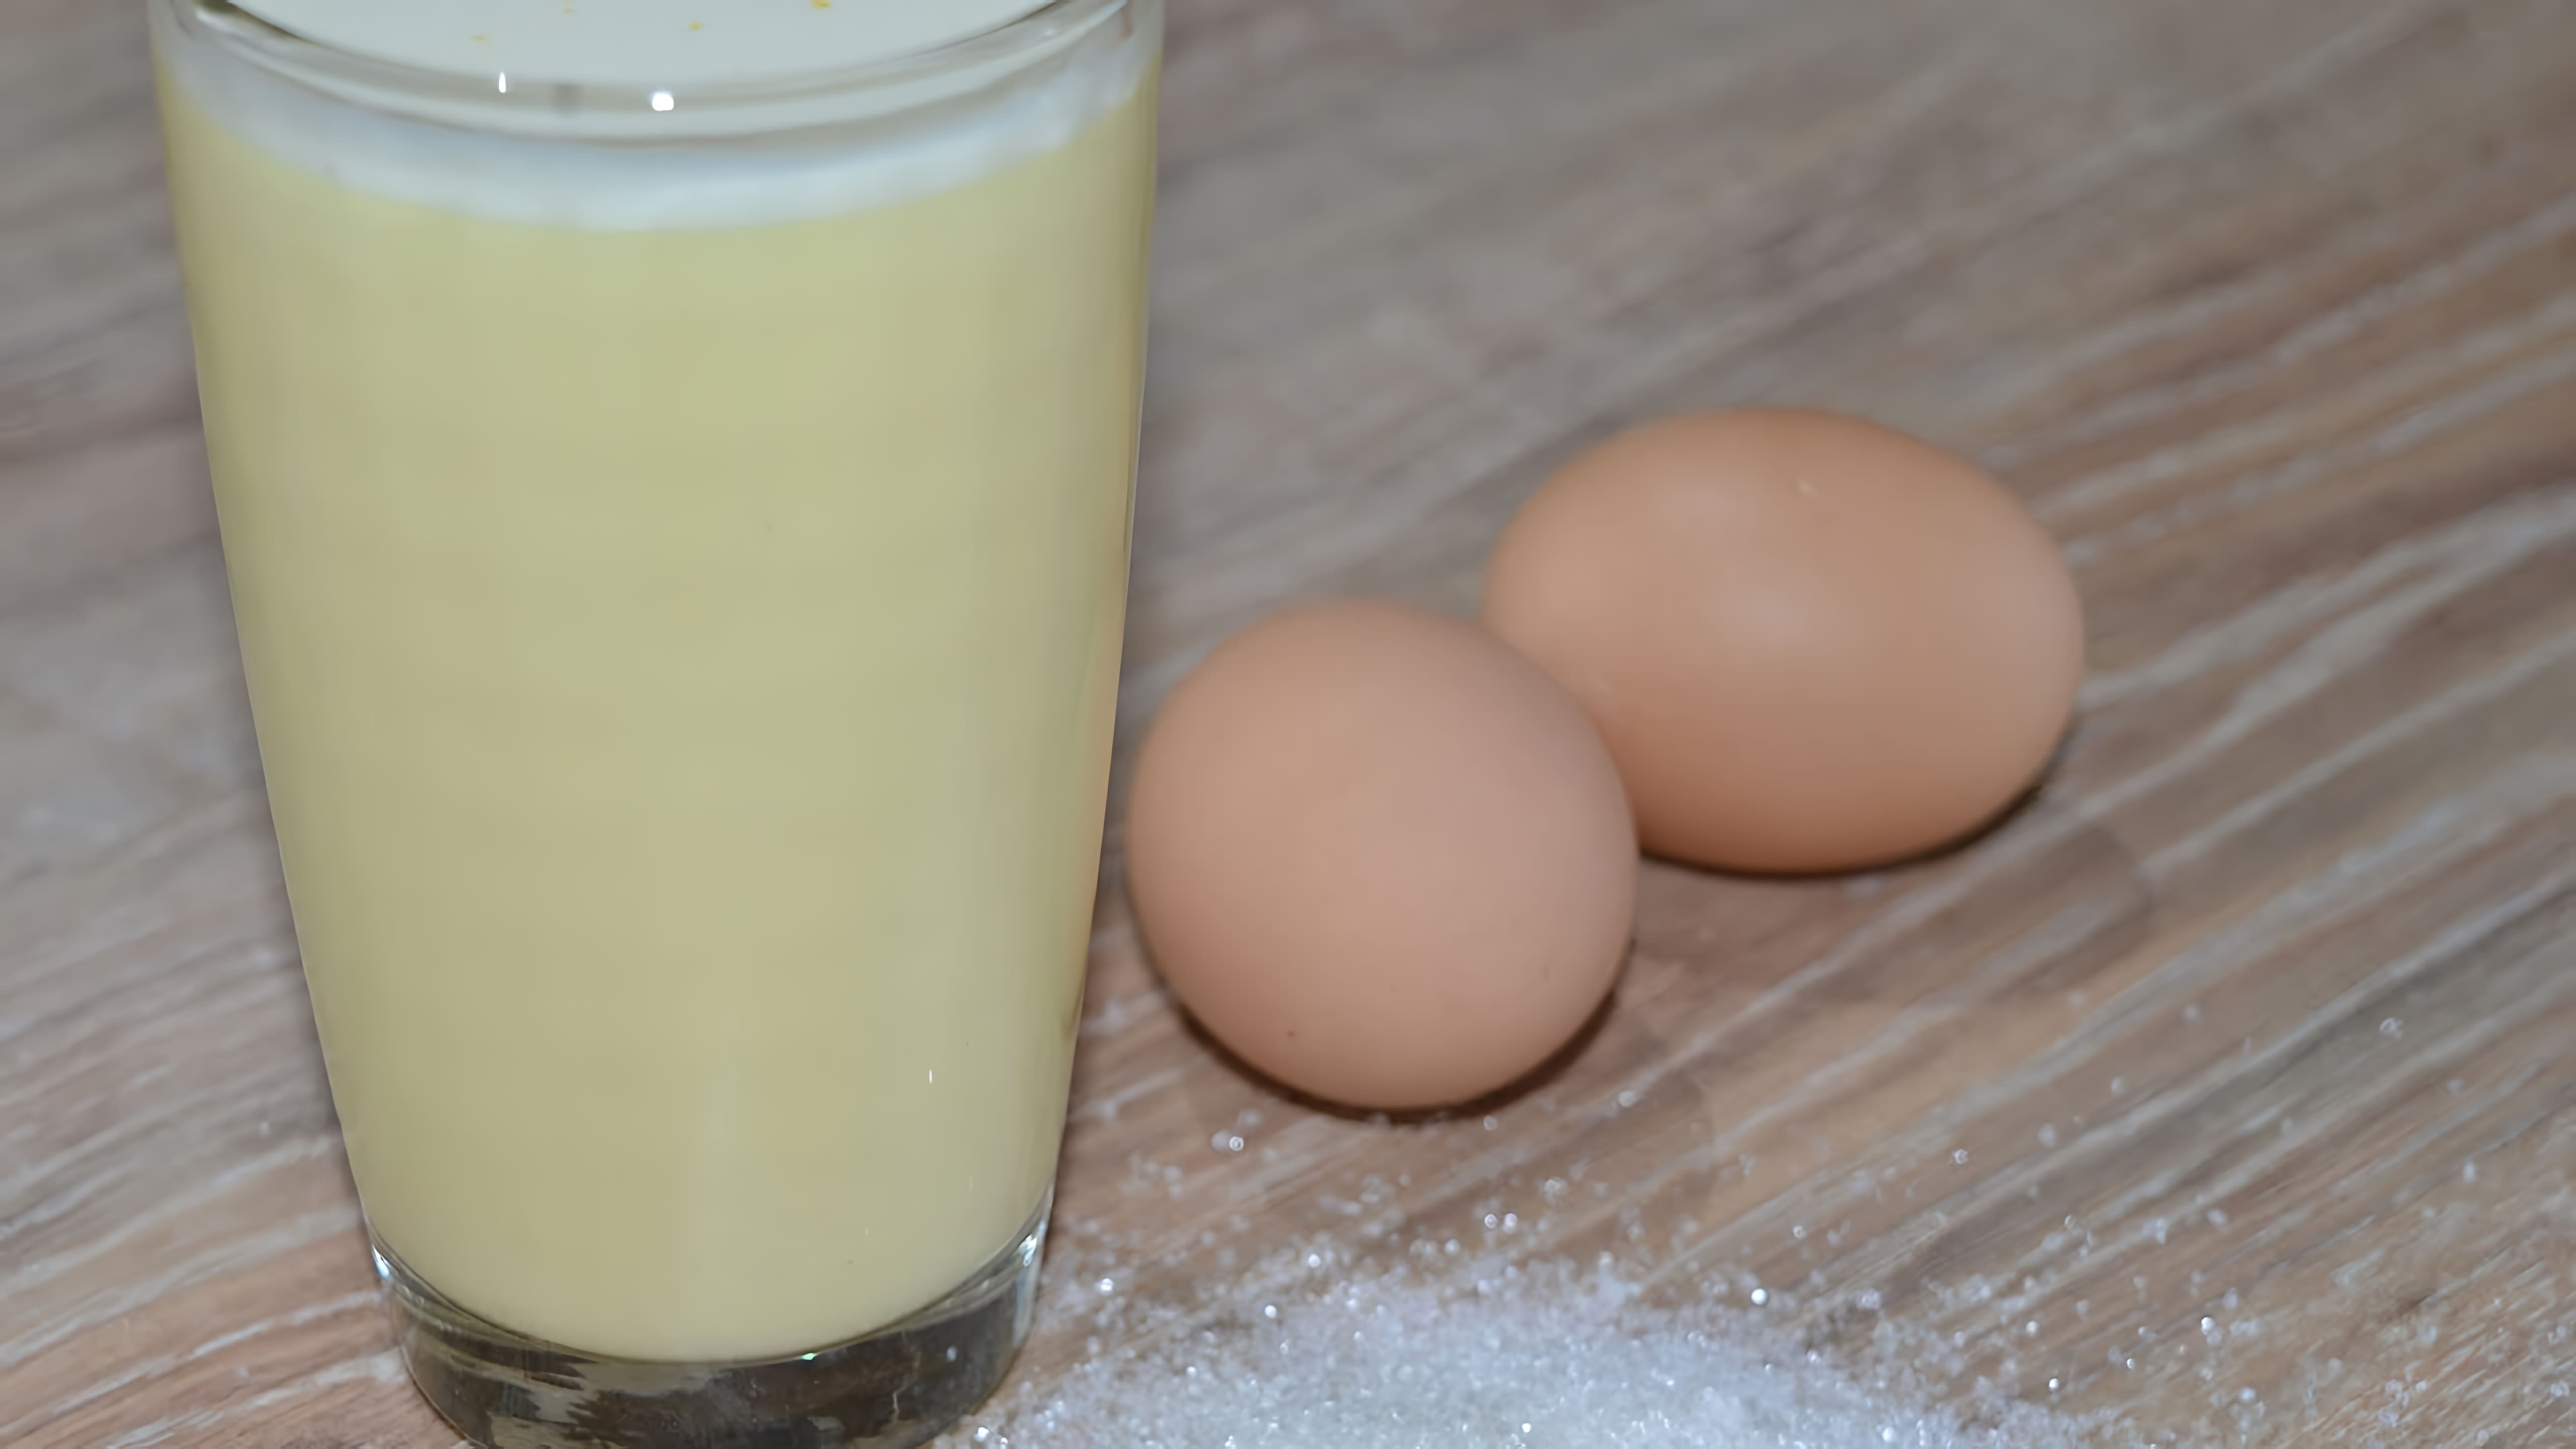 В этом видео демонстрируется процесс приготовления коктейля из молока и яиц